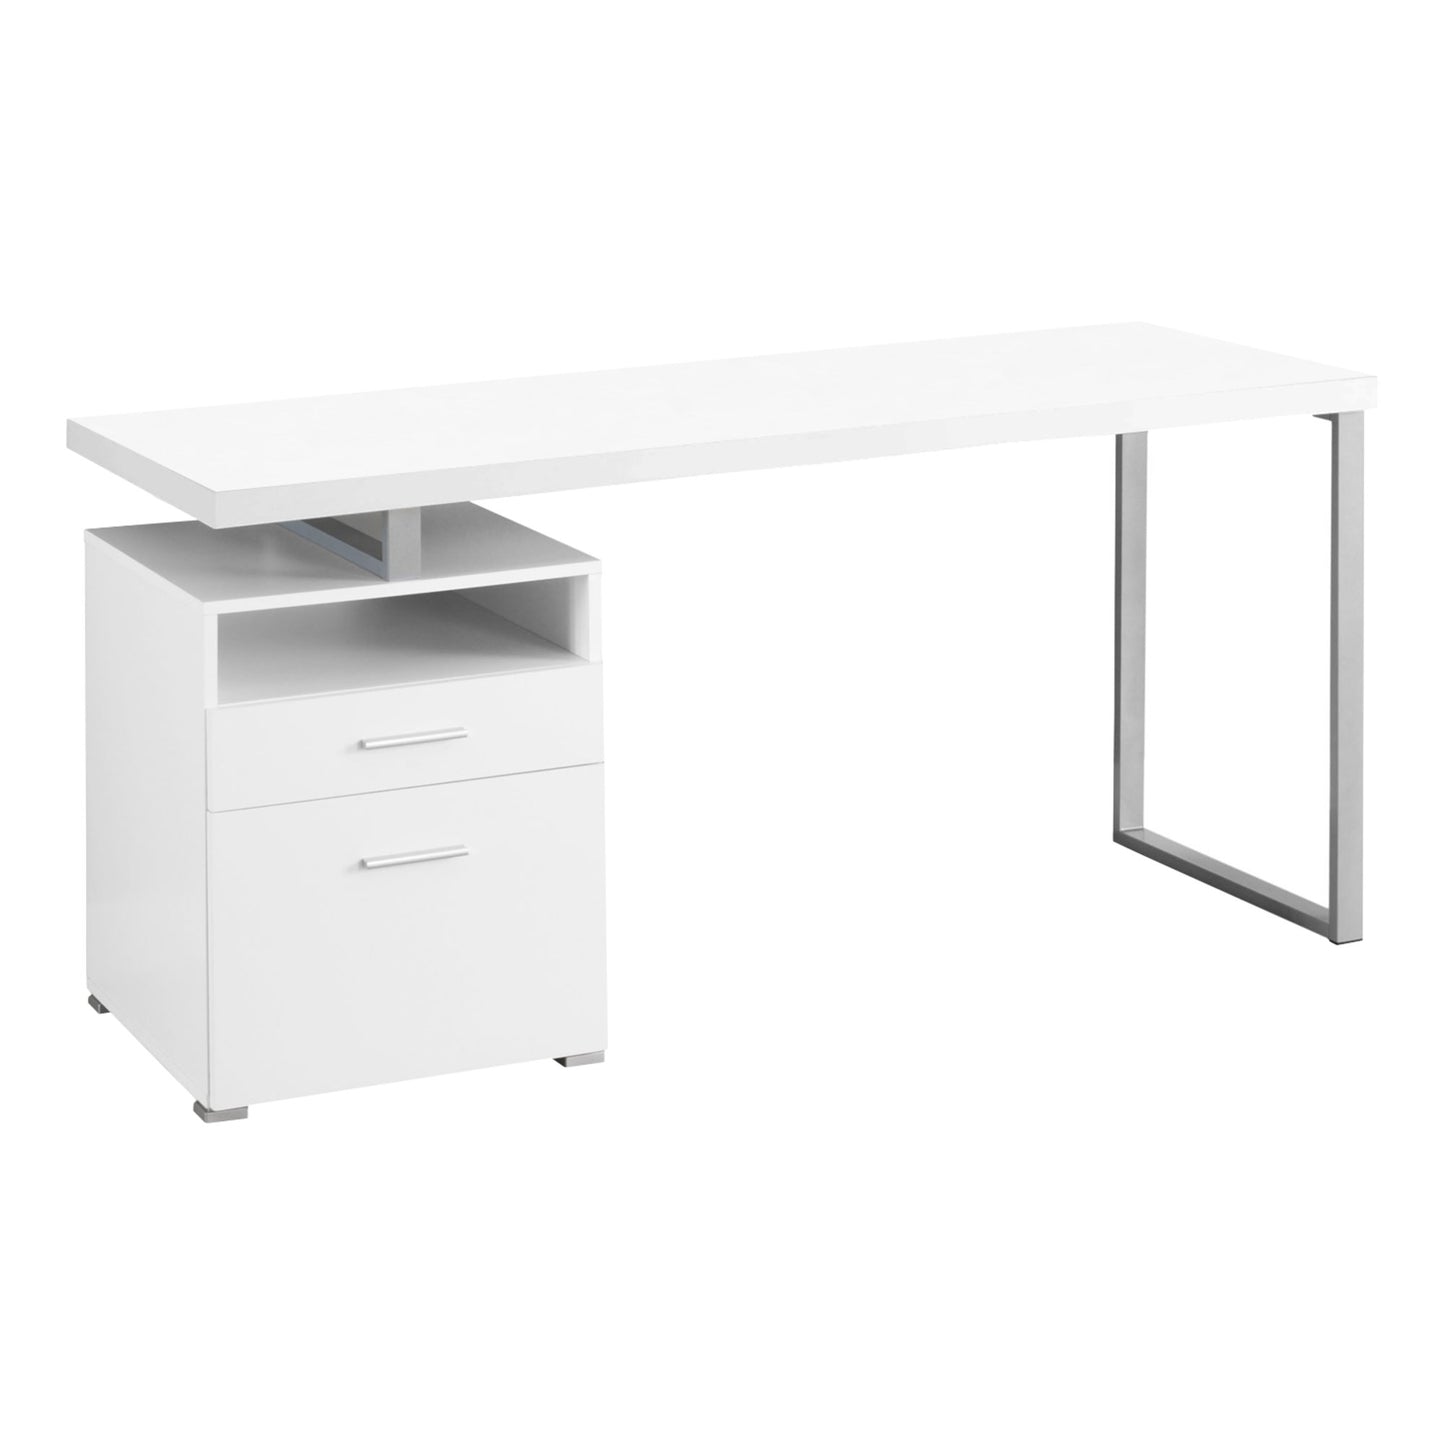 60" Computer Desk White and Silver-1